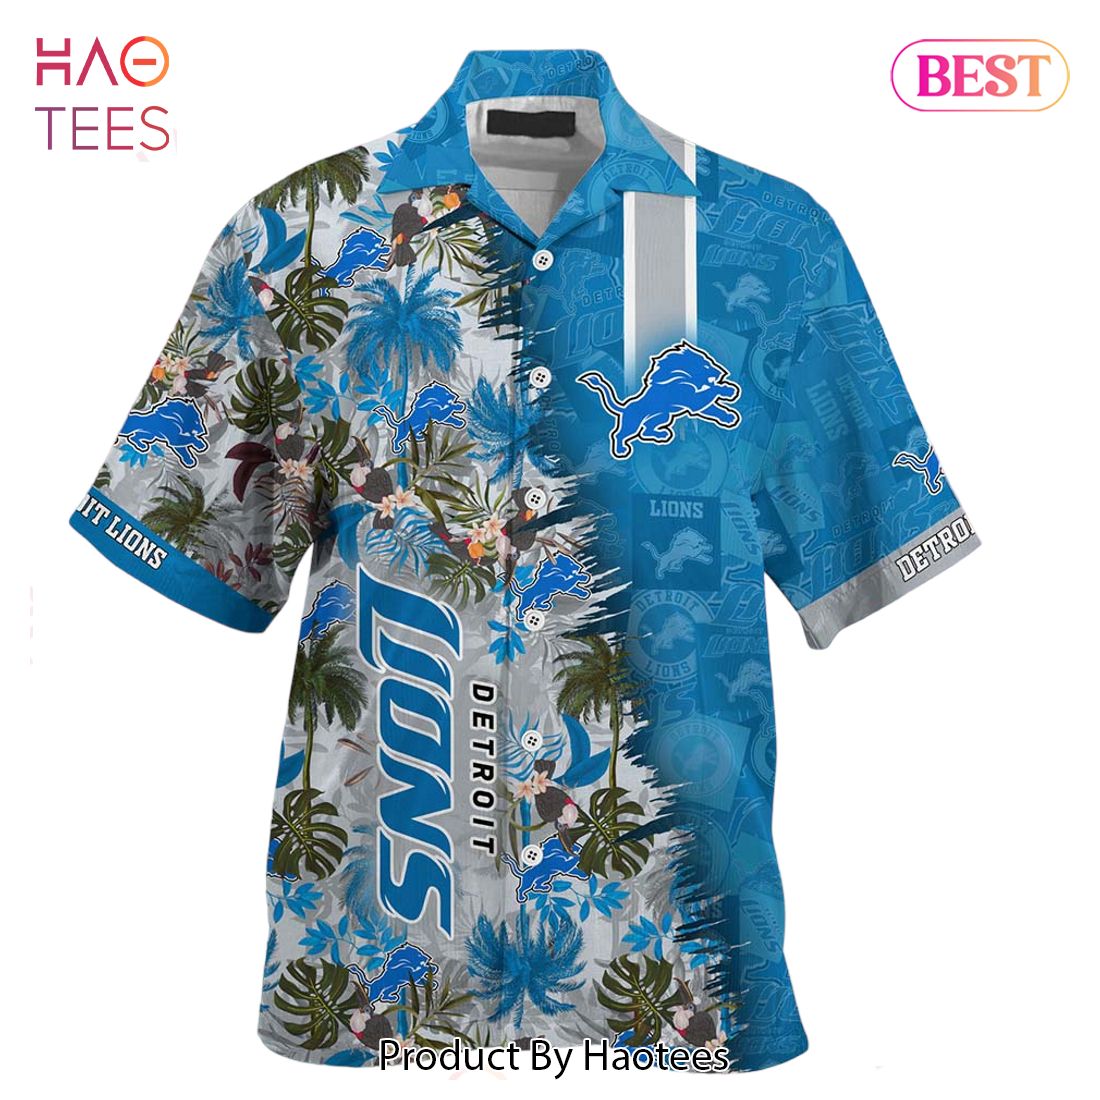 HOT TREND Detroit Lions NFL Team Football Beach Shirt Summer Button Down Hawaiian Shirt Fan Ever